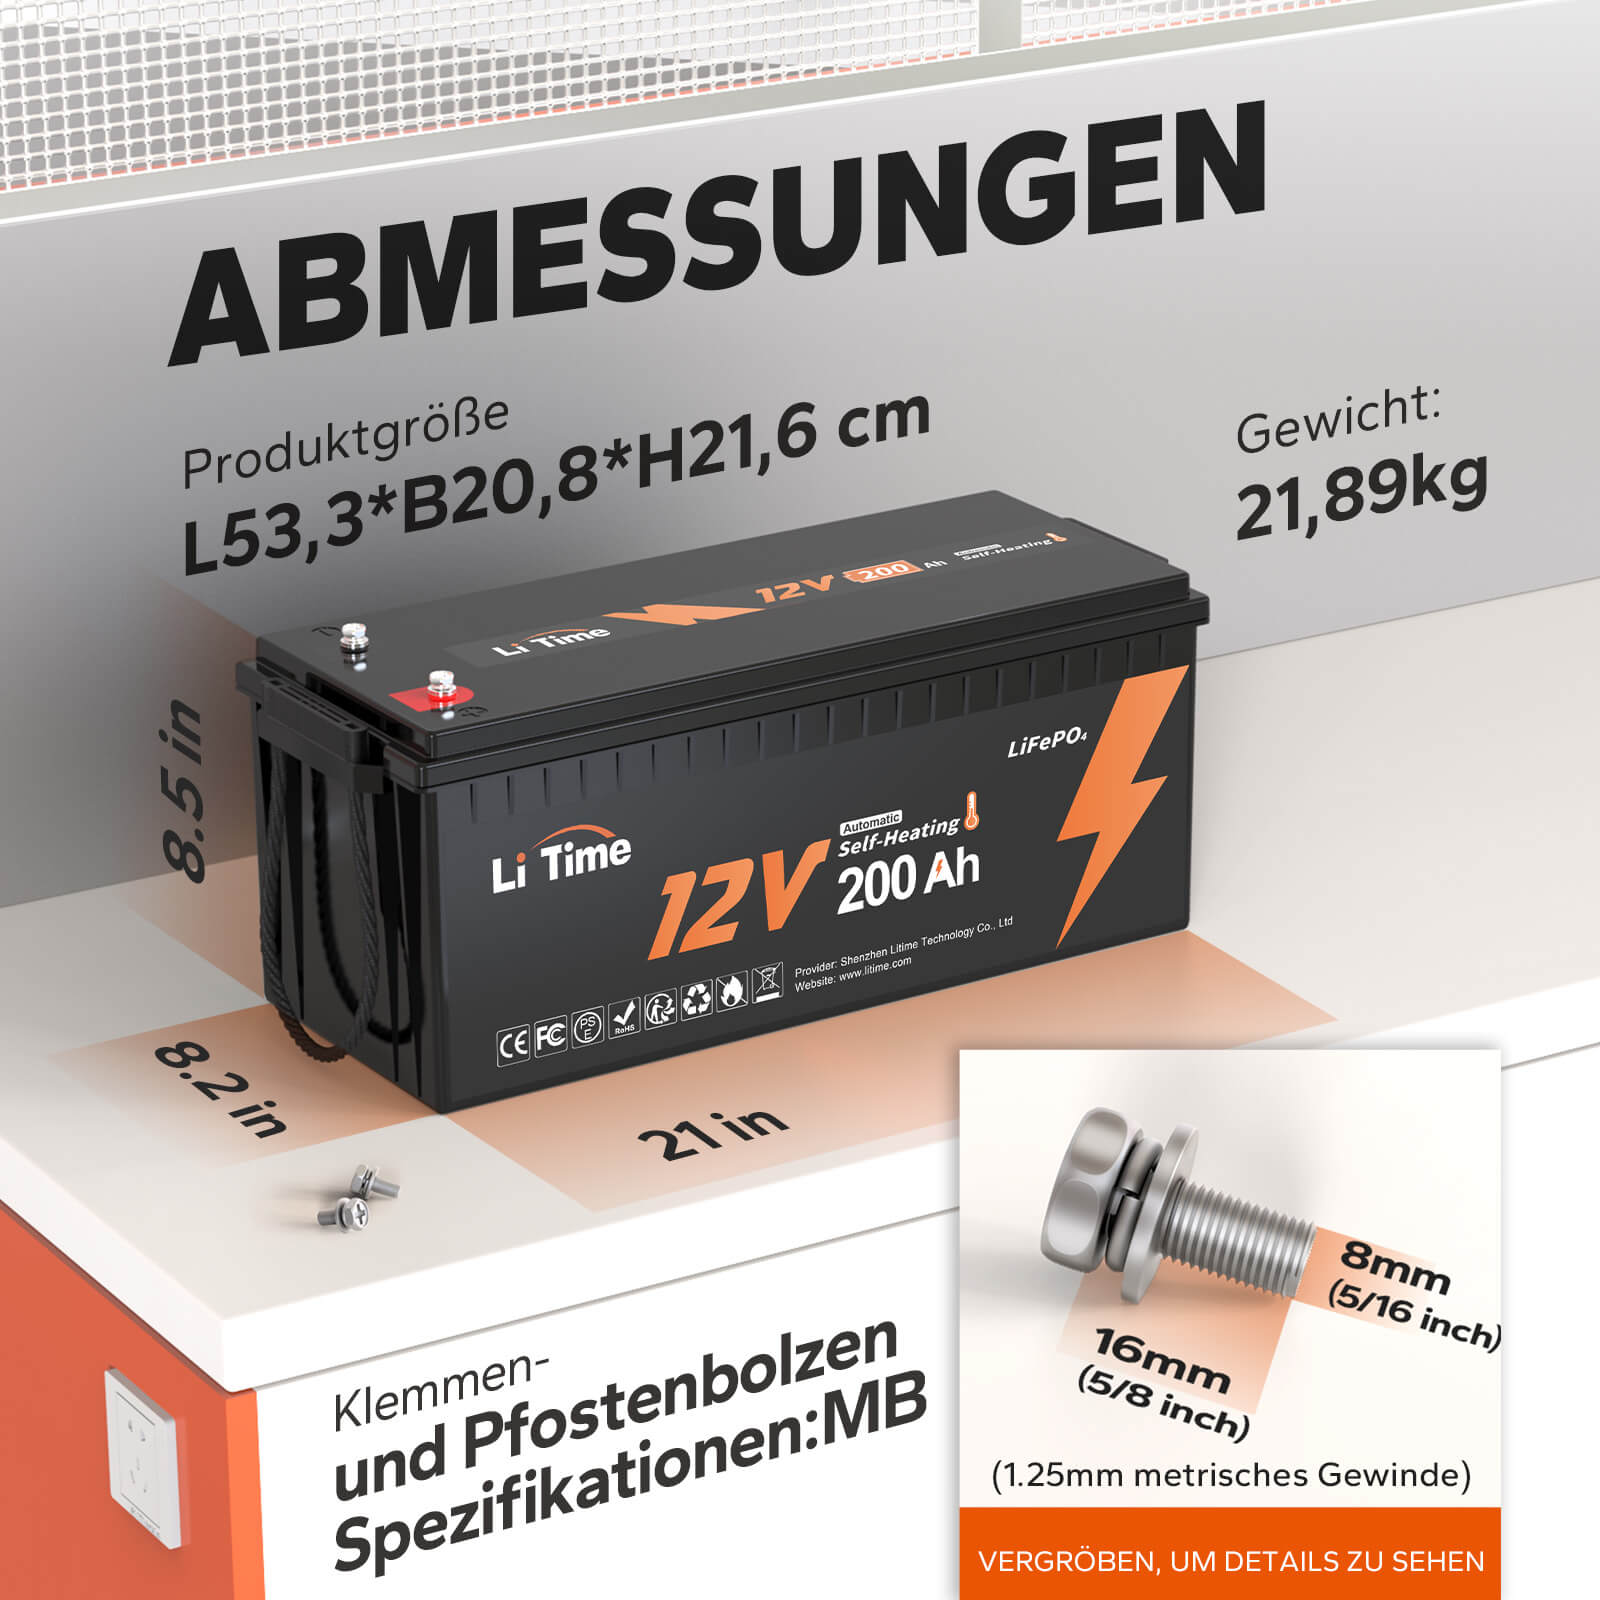 LiTime 12V 200Ah Selbsterwärmende LiFePO4 Lithium Batterie mit 100A BMS, unterstützt Niedrige Temp. Aufladen -20°C Media 2 of 10